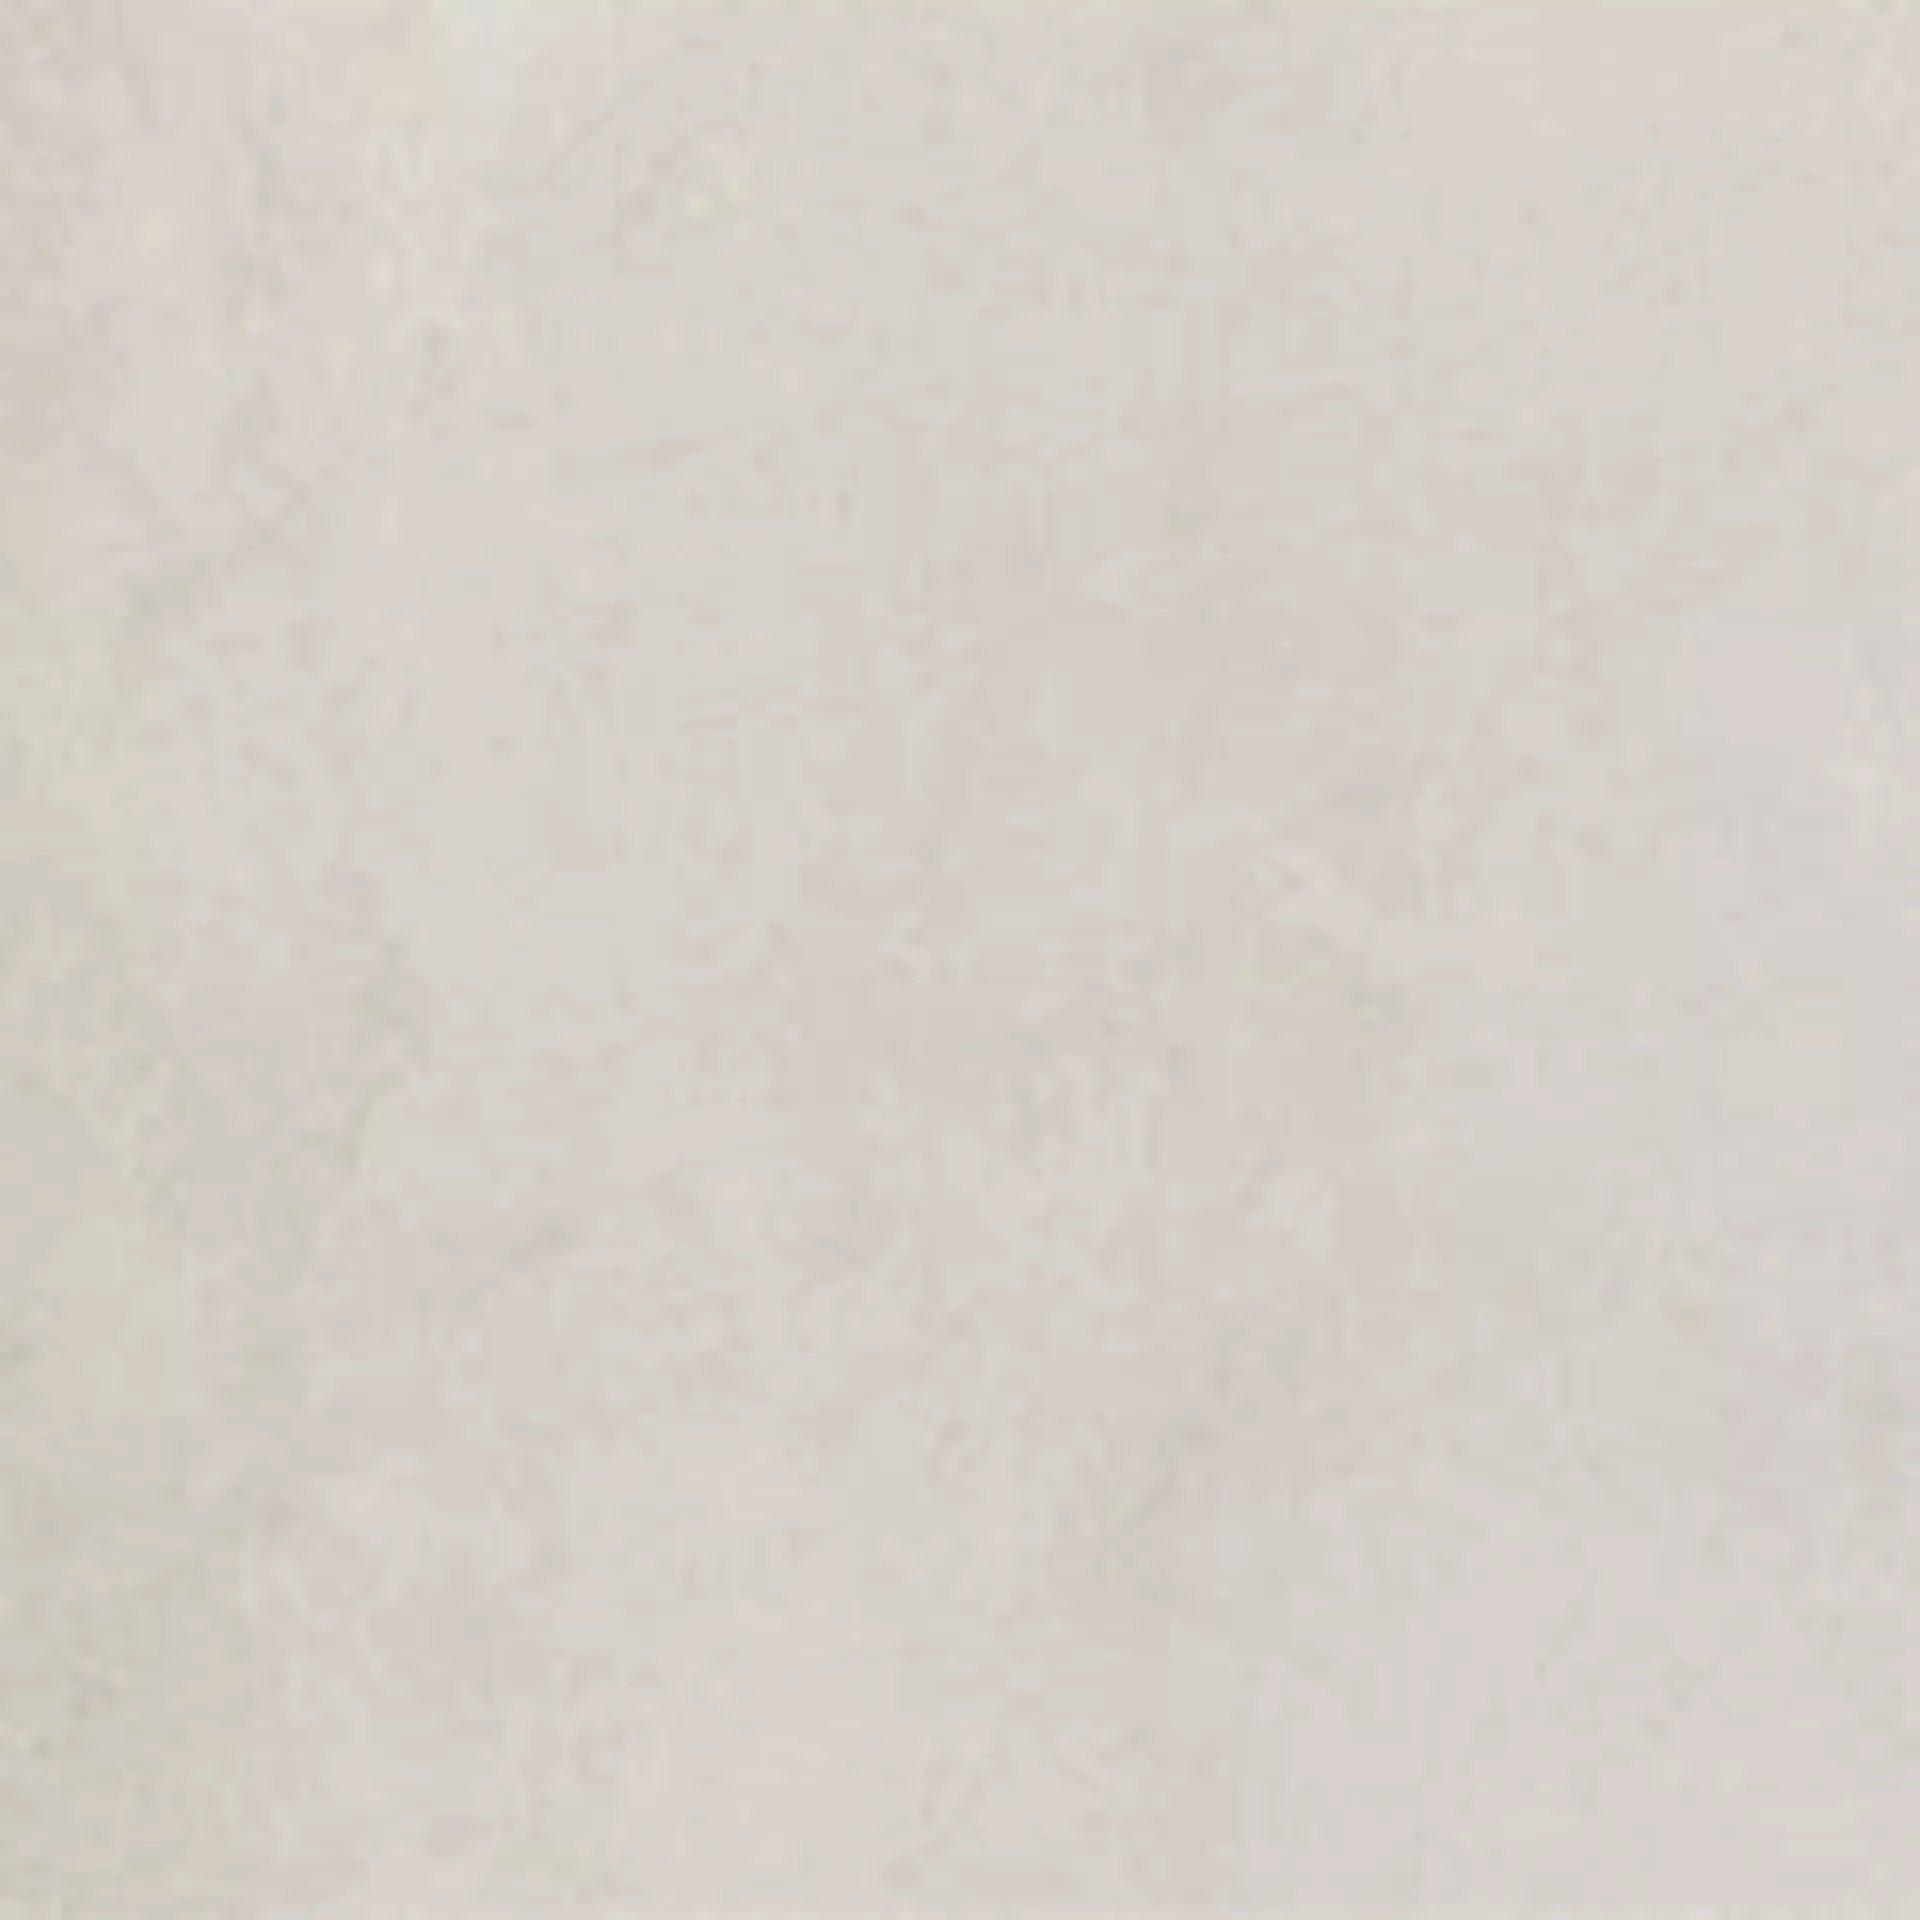 Bodenfliese,Wandfliese Marazzi Mystone Kashmir Bianco Lux Bianco MM0R glaenzend 60x60cm rektifiziert 10mm